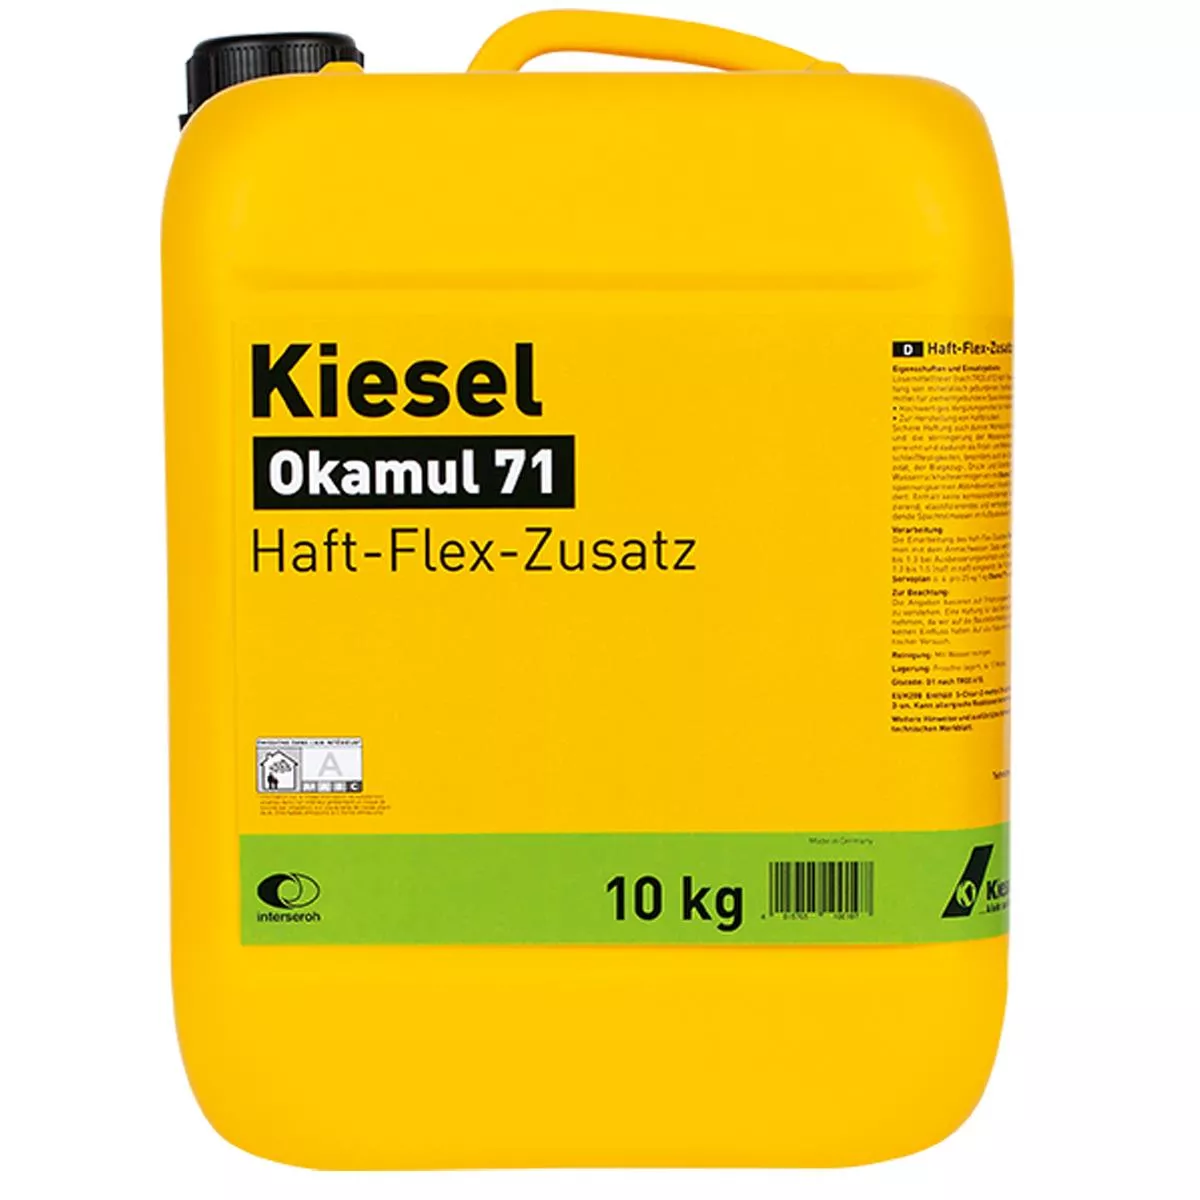 Haft-Flex-Zusatz Kiesel Okamul 71